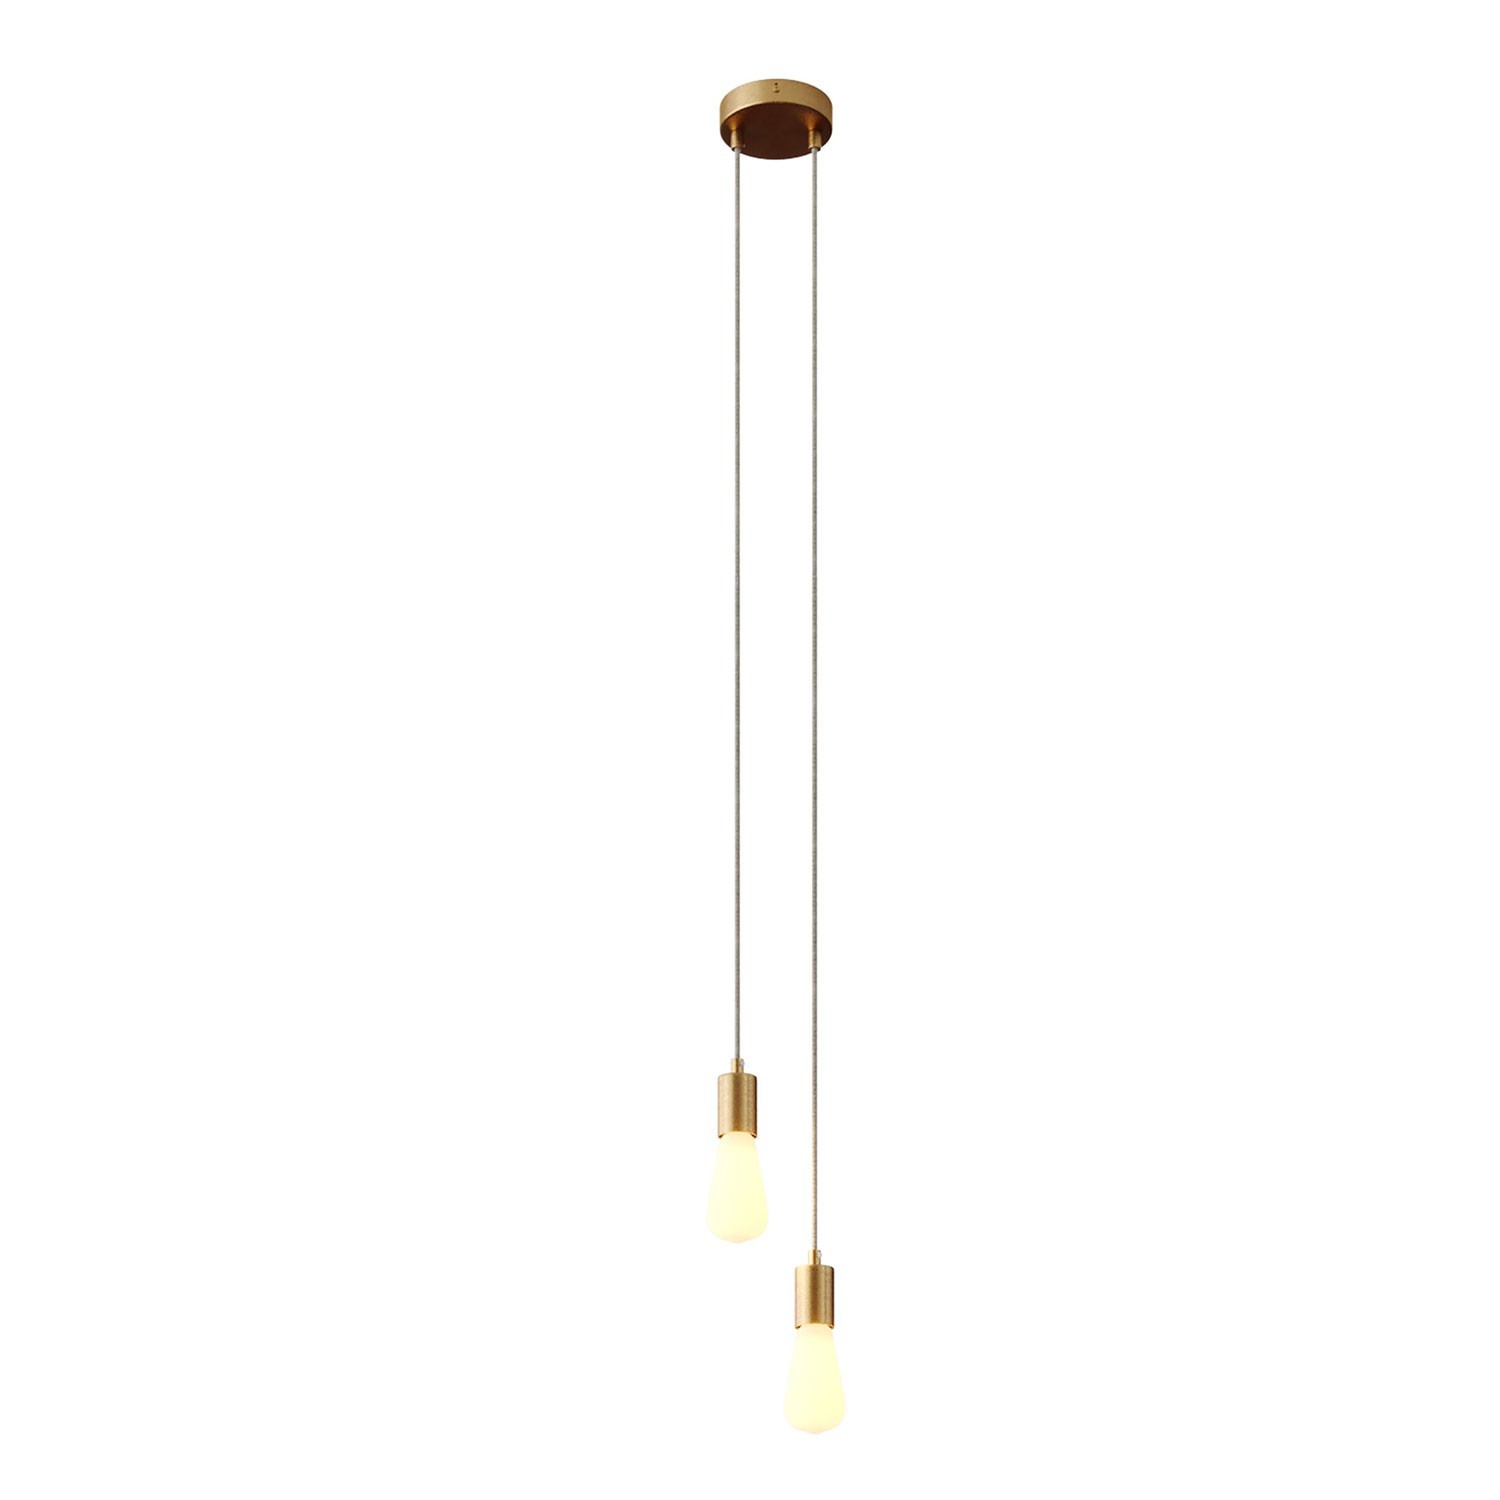 Lampe suspension multiple 2 bras avec câble textile et finitions en métal